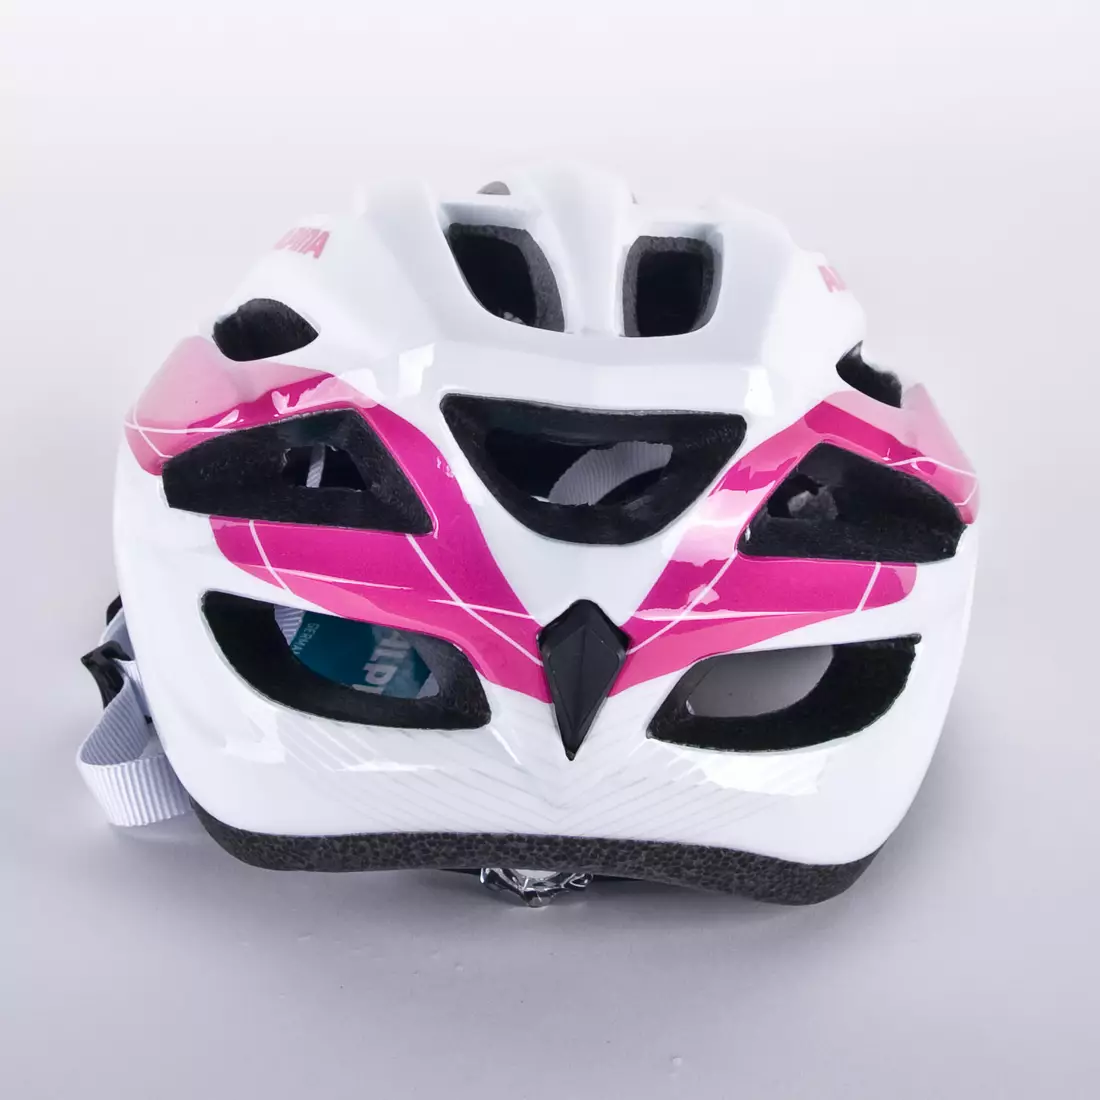 ALPINA Cyklistická prilba MTB17, biela a ružová